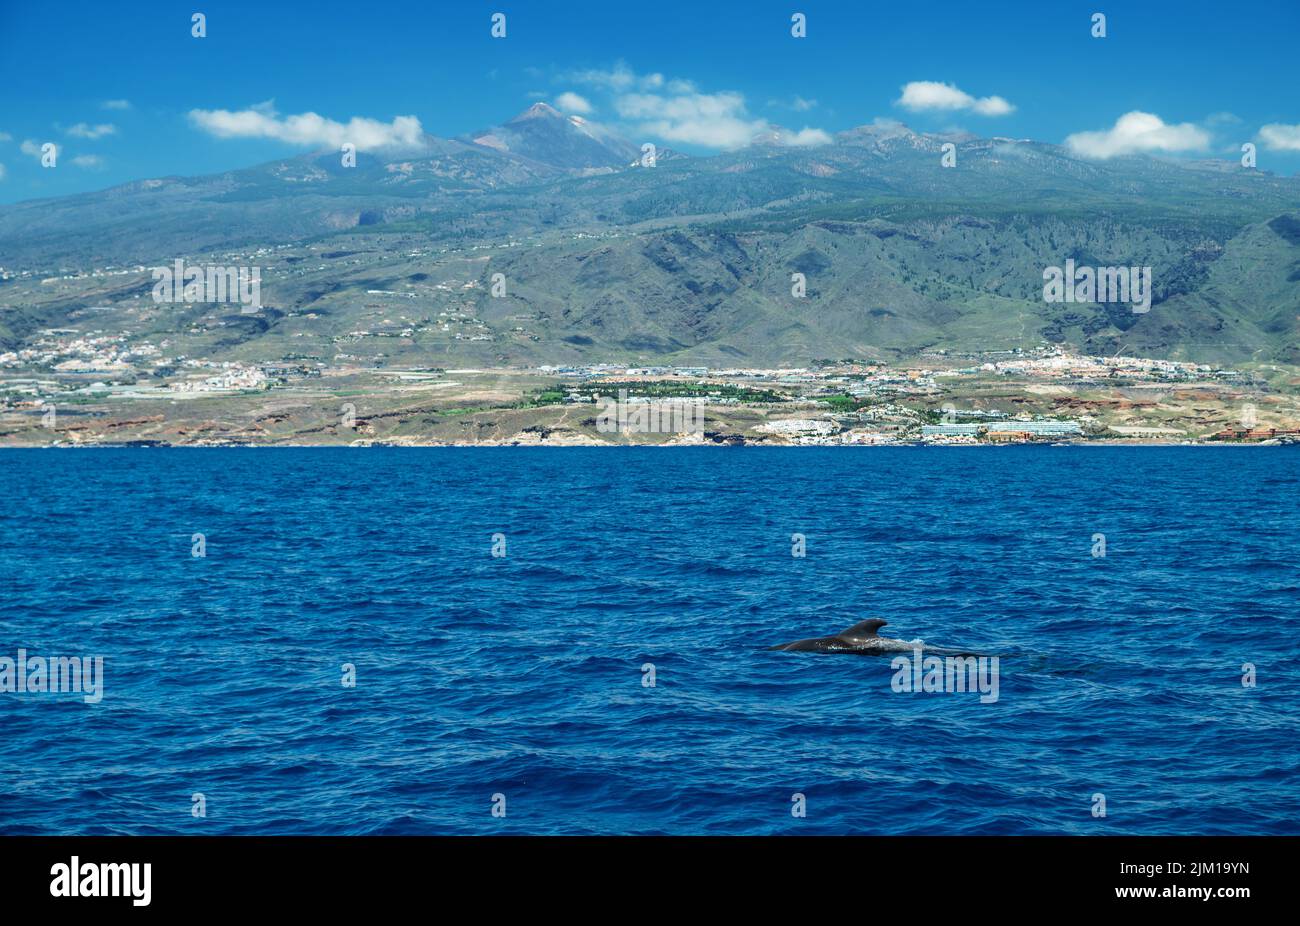 Vista de la isla de Tenerife desde el océano. Las ballenas piloto en el agua están en primer plano. Foto de stock